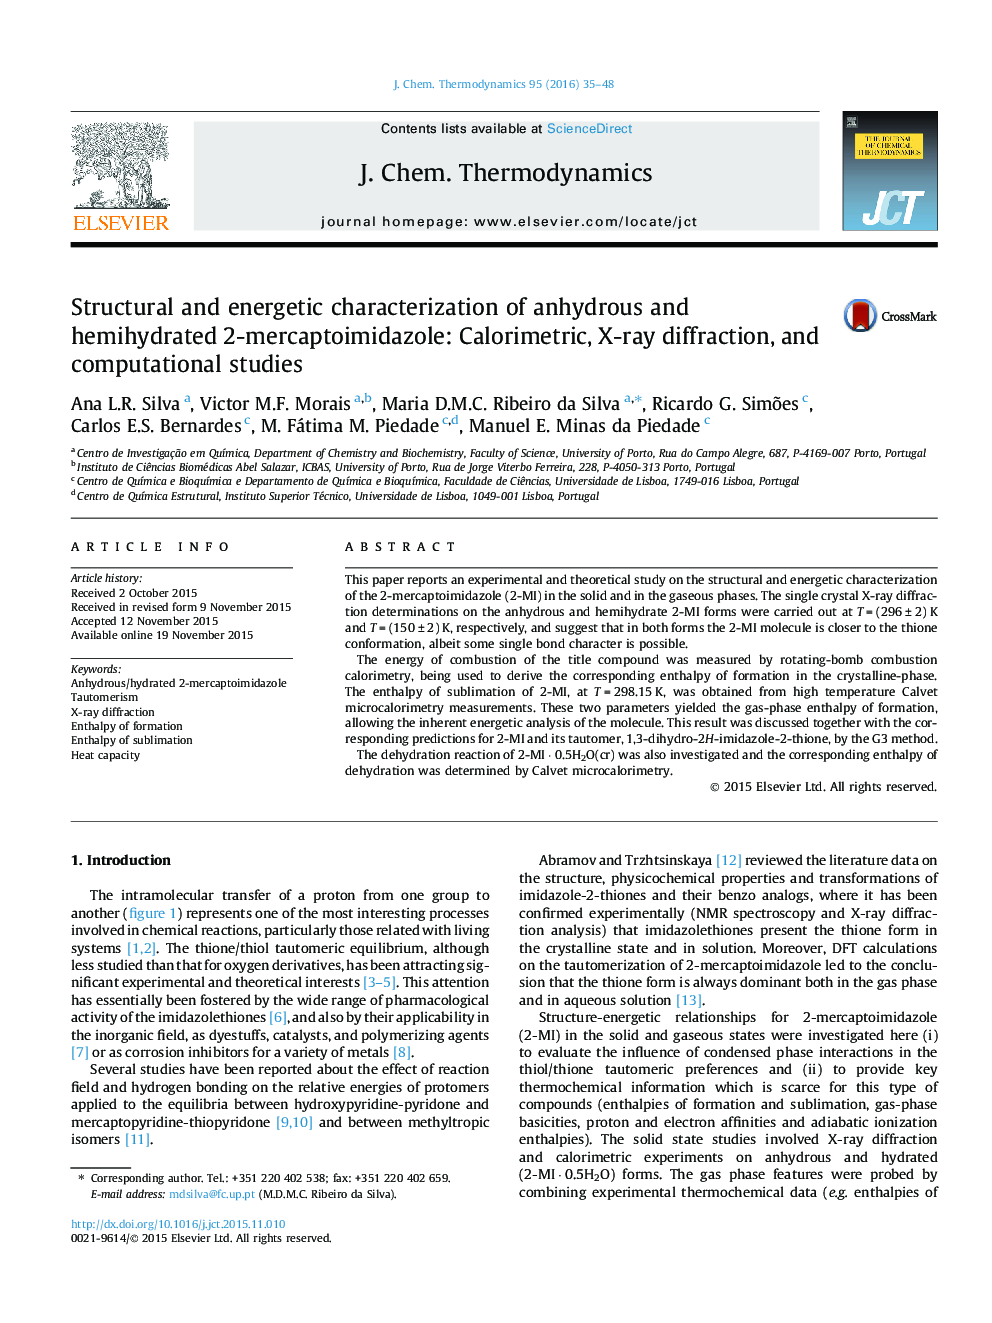 خصوصیات سازه ای و پر انرژی بدون آب و نیمه هیدرات 2-мерکارپتویمیدازول: کولورمتری، پراش اشعه ایکس و مطالعات محاسباتی 